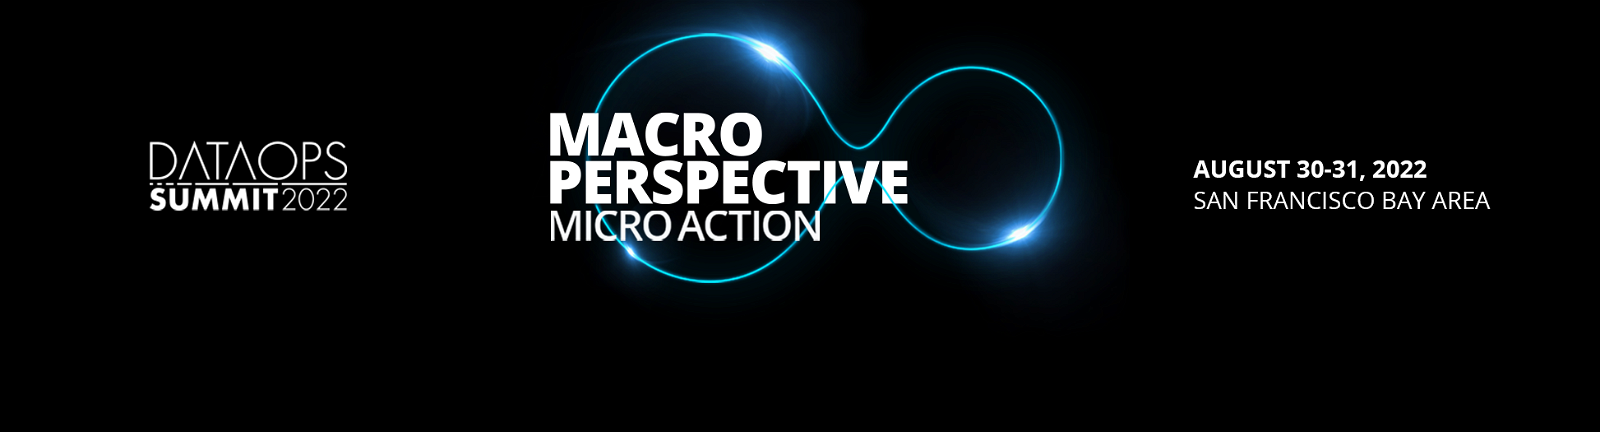 DataOps峰会 2022 Macro Perspective Micro Action